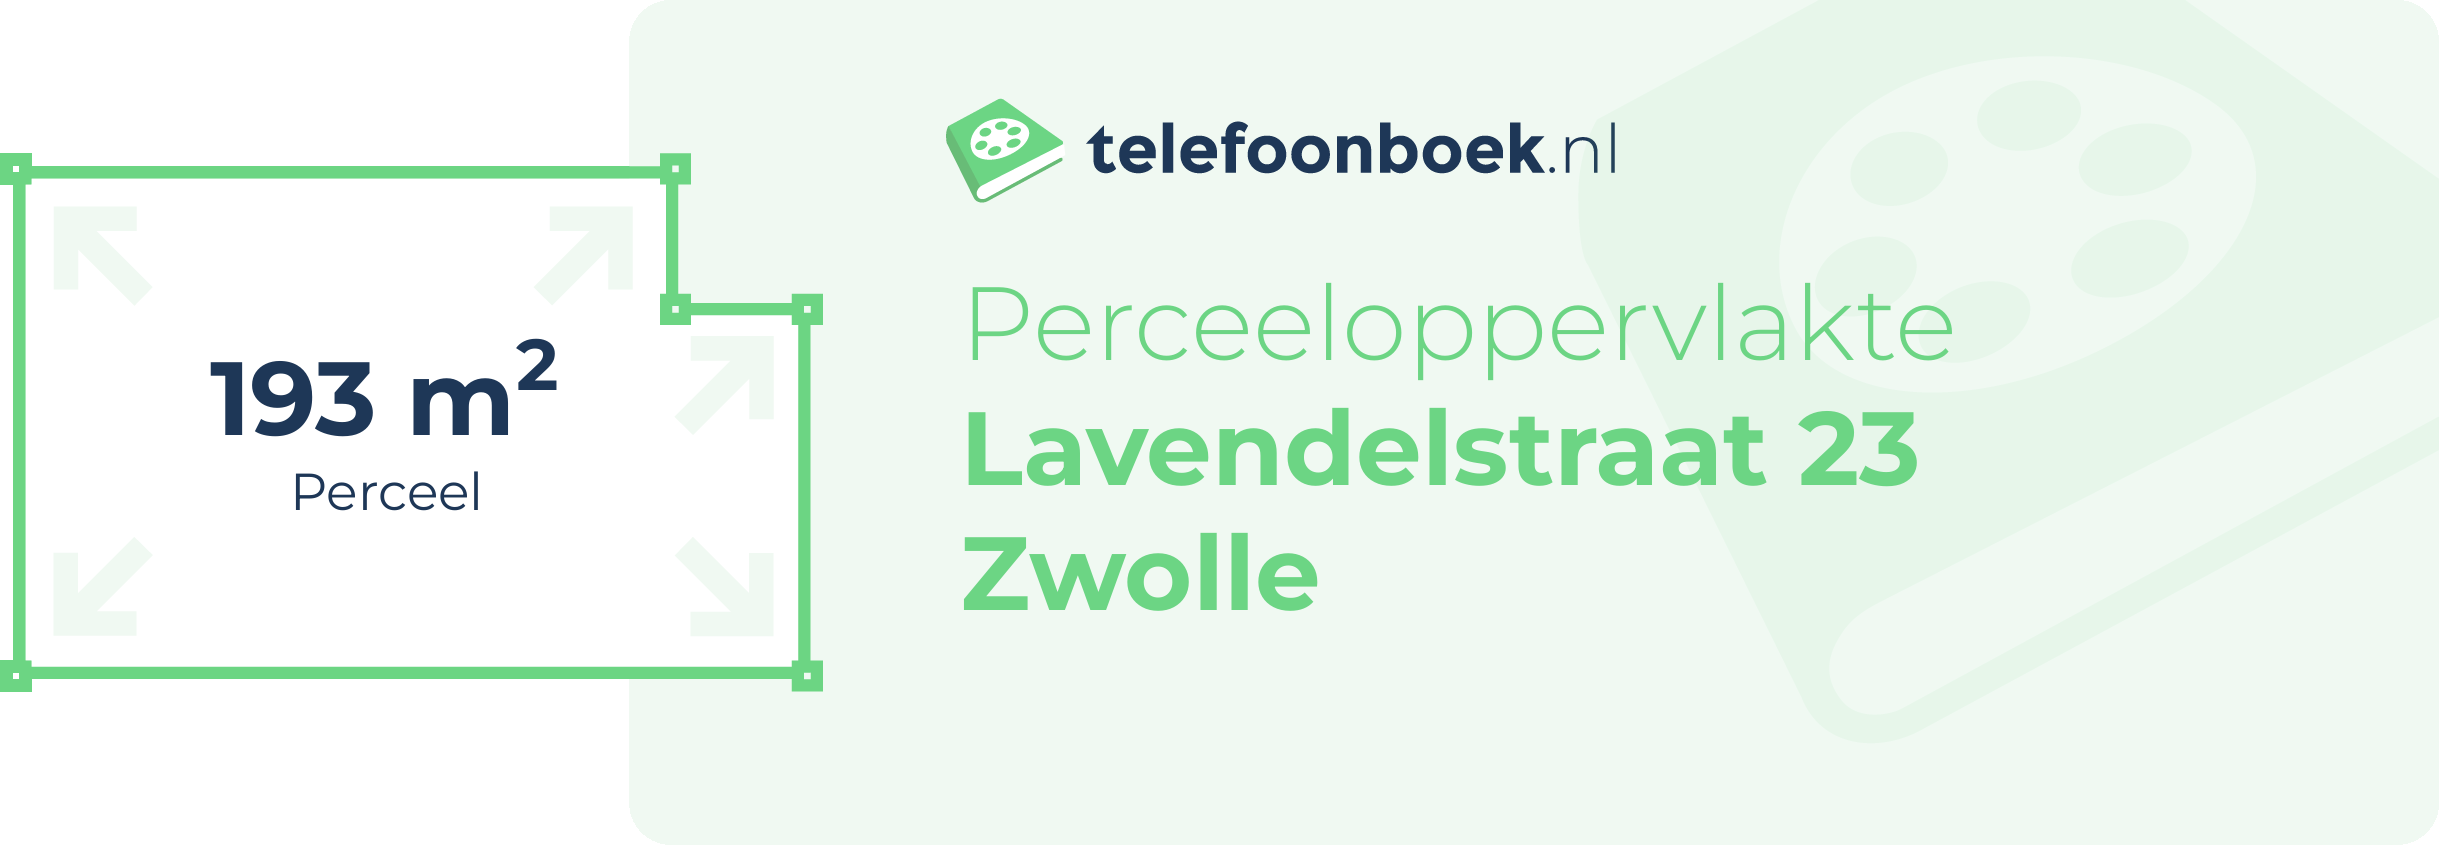 Perceeloppervlakte Lavendelstraat 23 Zwolle